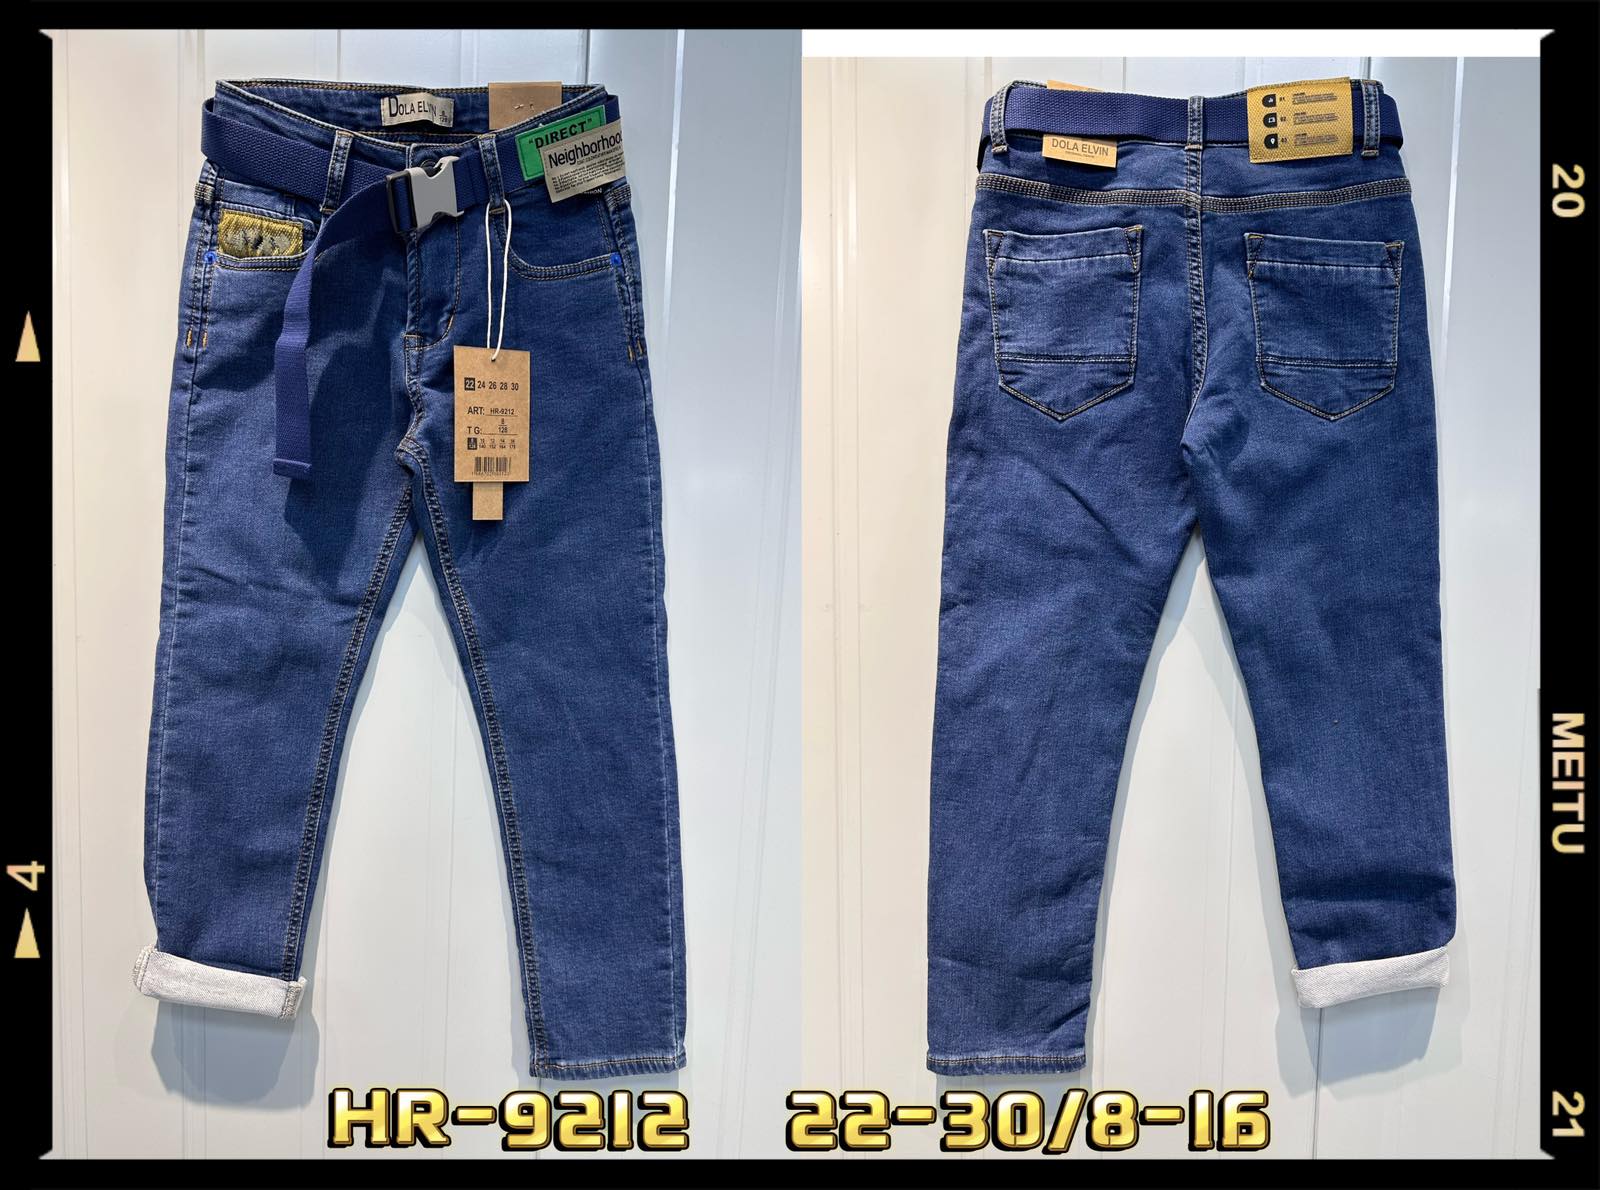 Spodnie  jeansowe  chłopięca Roz 22-30/8-16, 1 kolor Paczka 10 szt